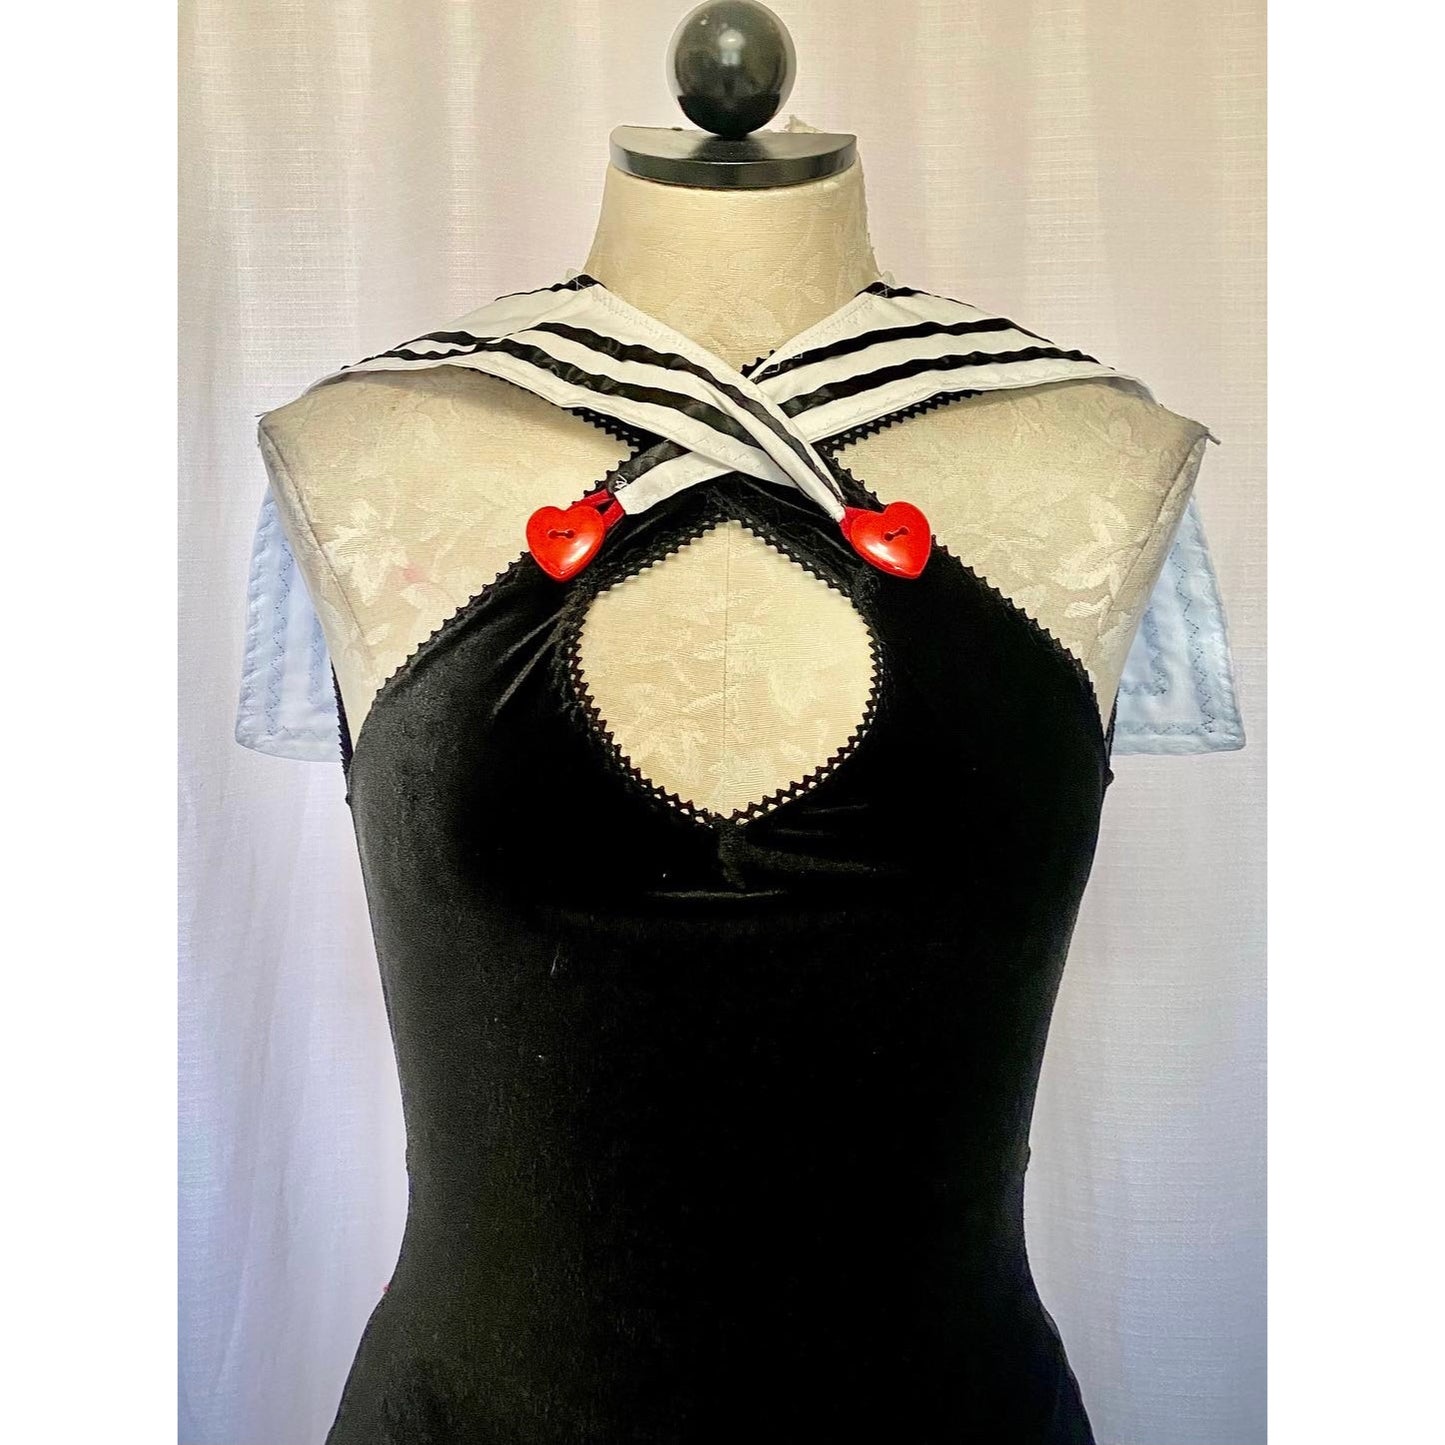 The Sailor Bodysuit